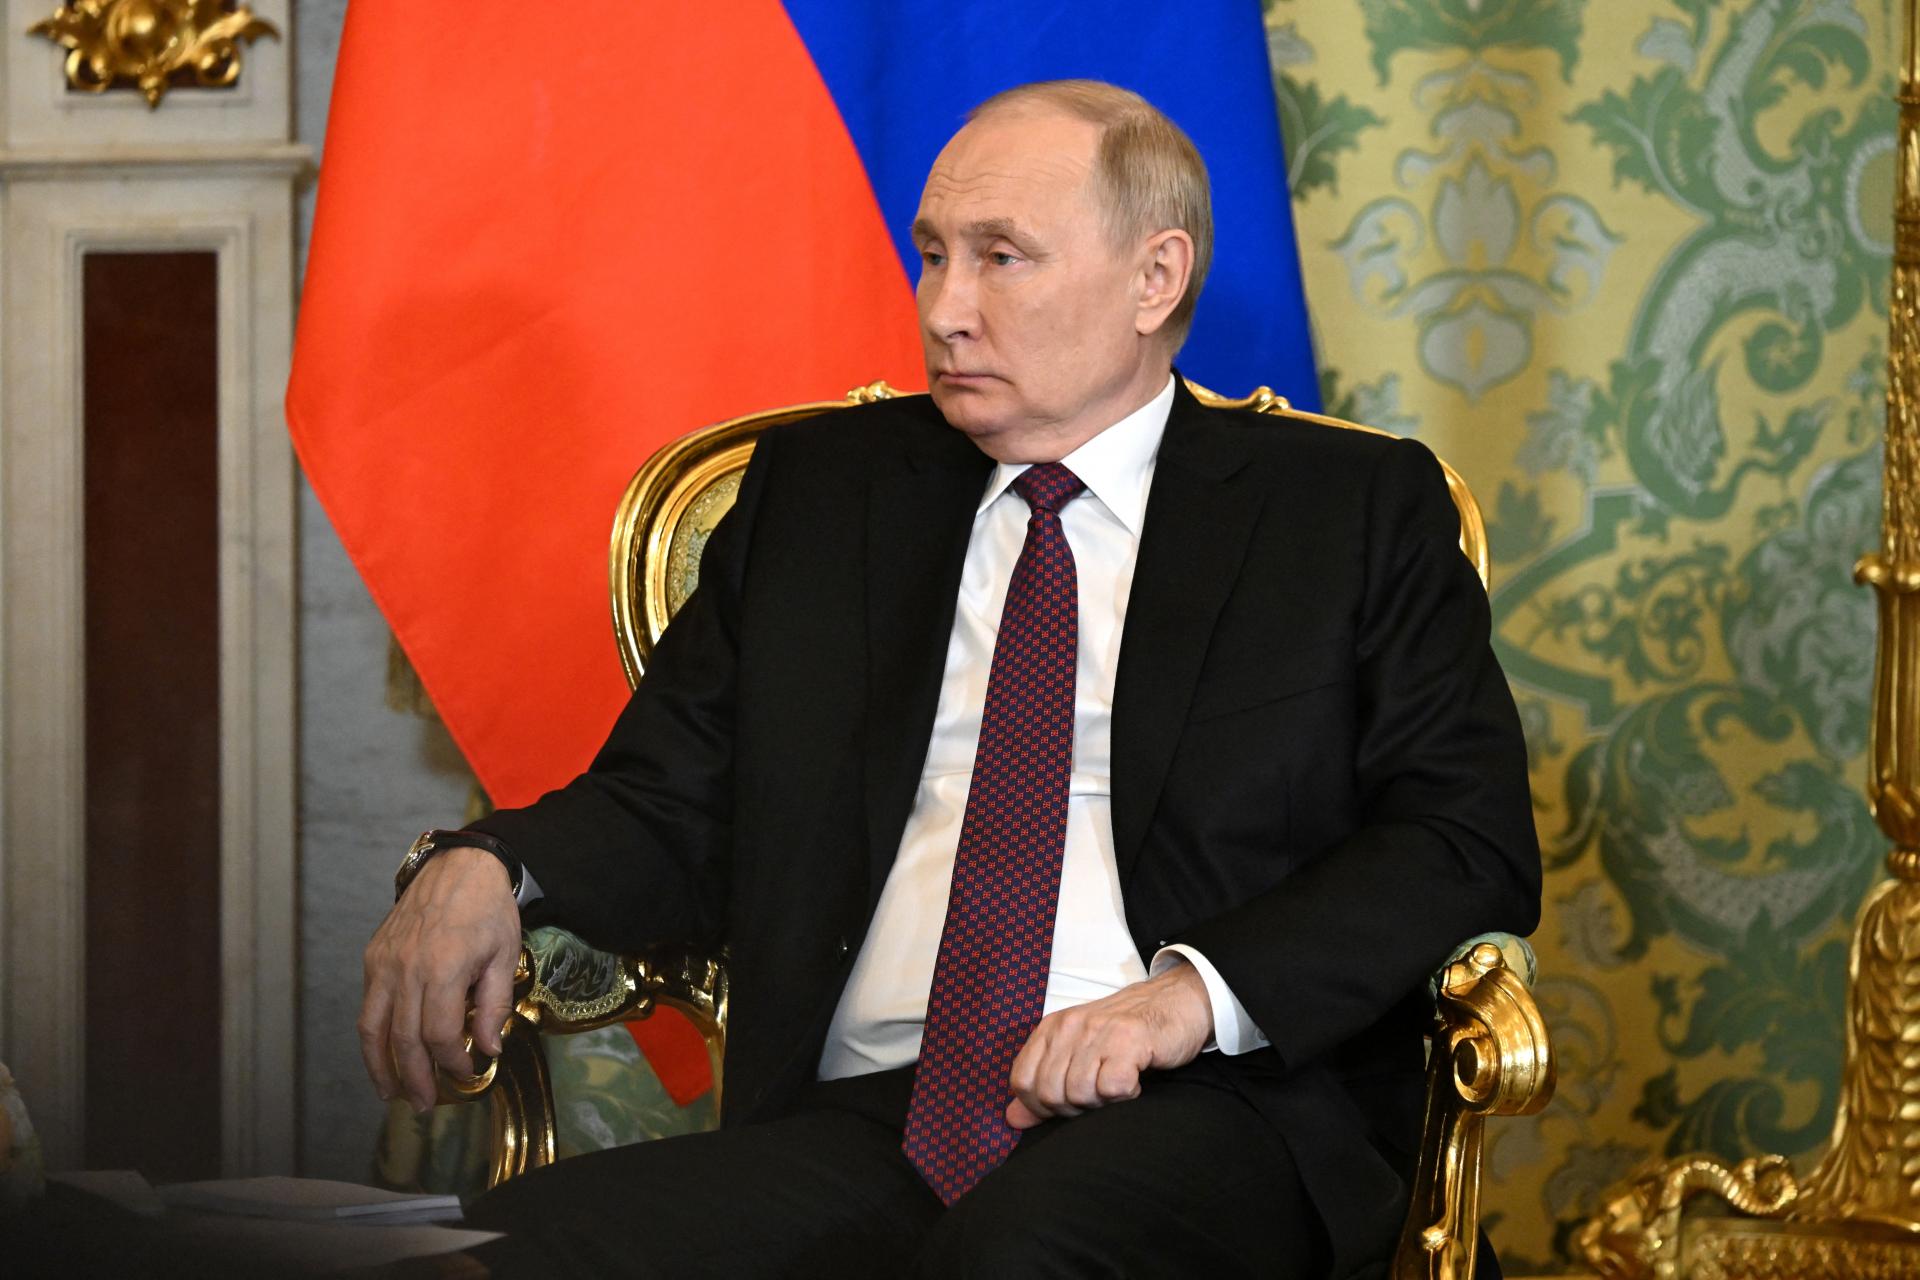 Rusko sa stáva novým centrom globálneho rastu, sankcie mu neuškodili, tvrdí Putin